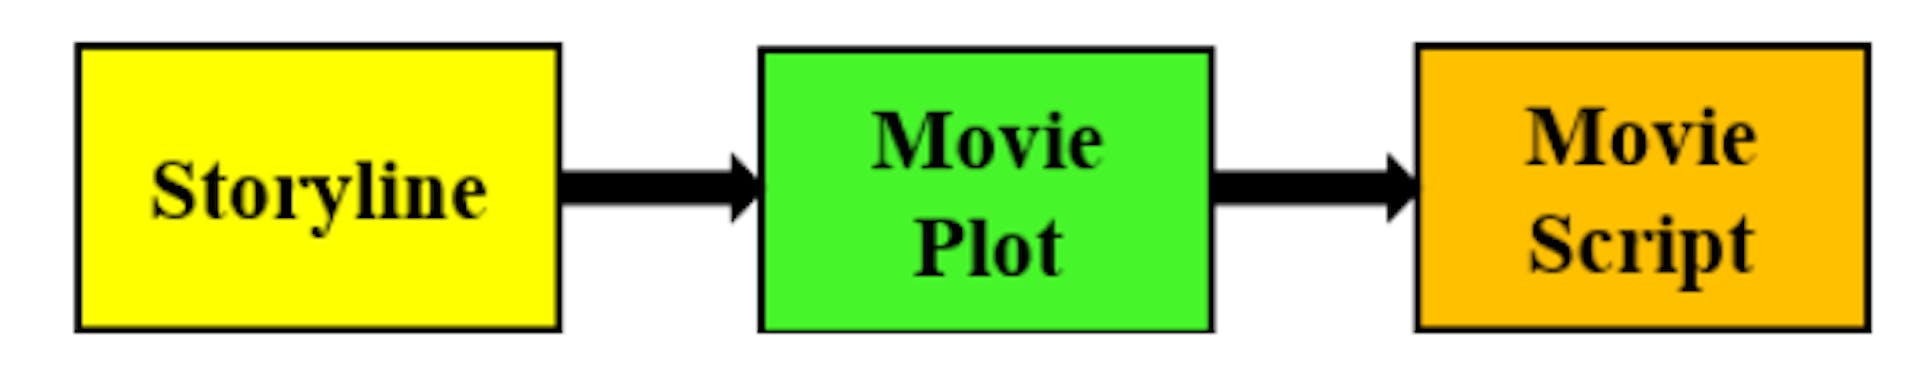 Figura 1: El proceso de pensamiento que sigue un guionista al crear el guión de una película. Una idea (argumento) conduce a una trama que luego se convierte en el guión de una película.